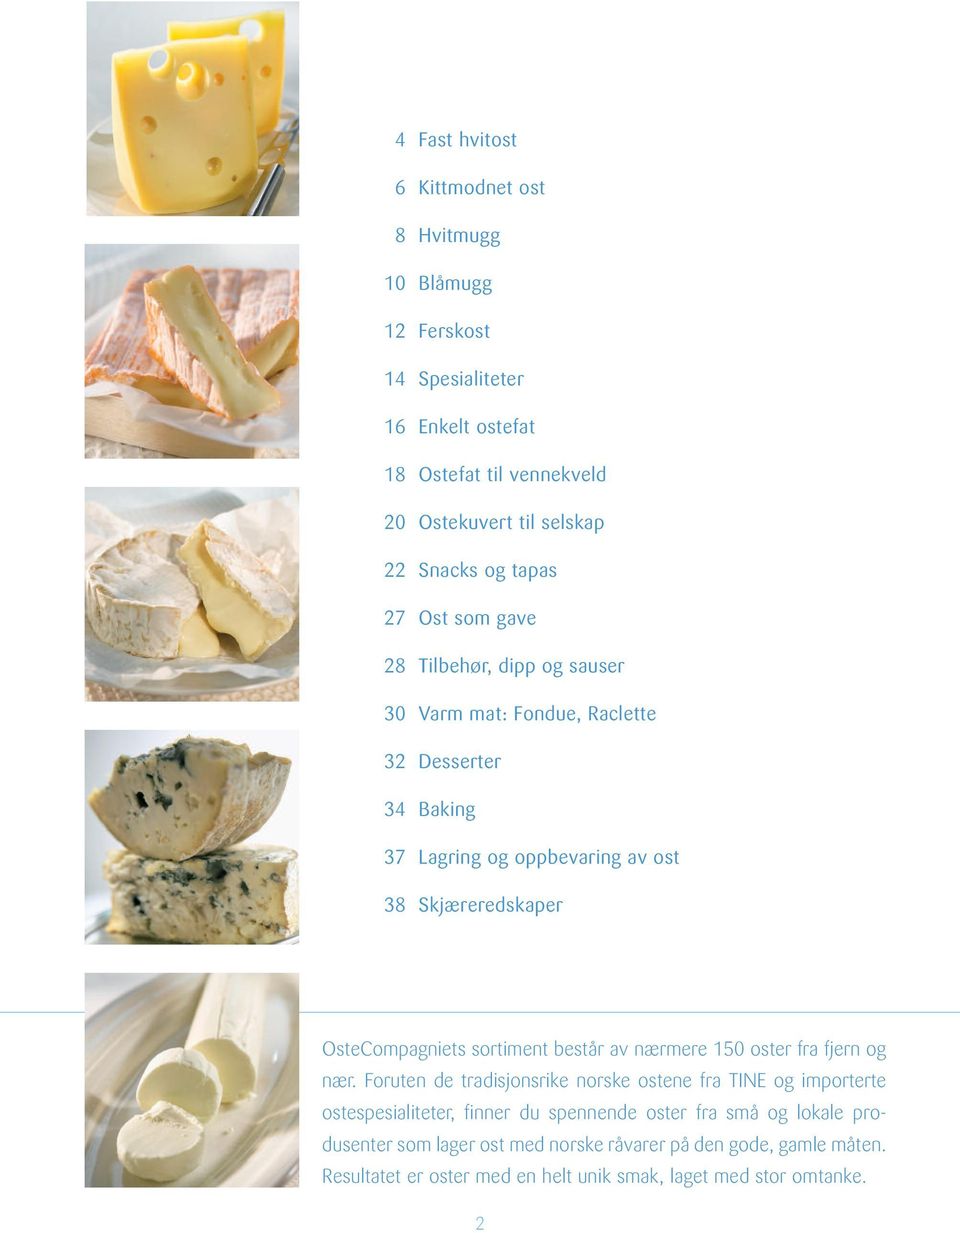 OsteCompagniets sortiment består av nærmere 150 oster fra fjern og nær.